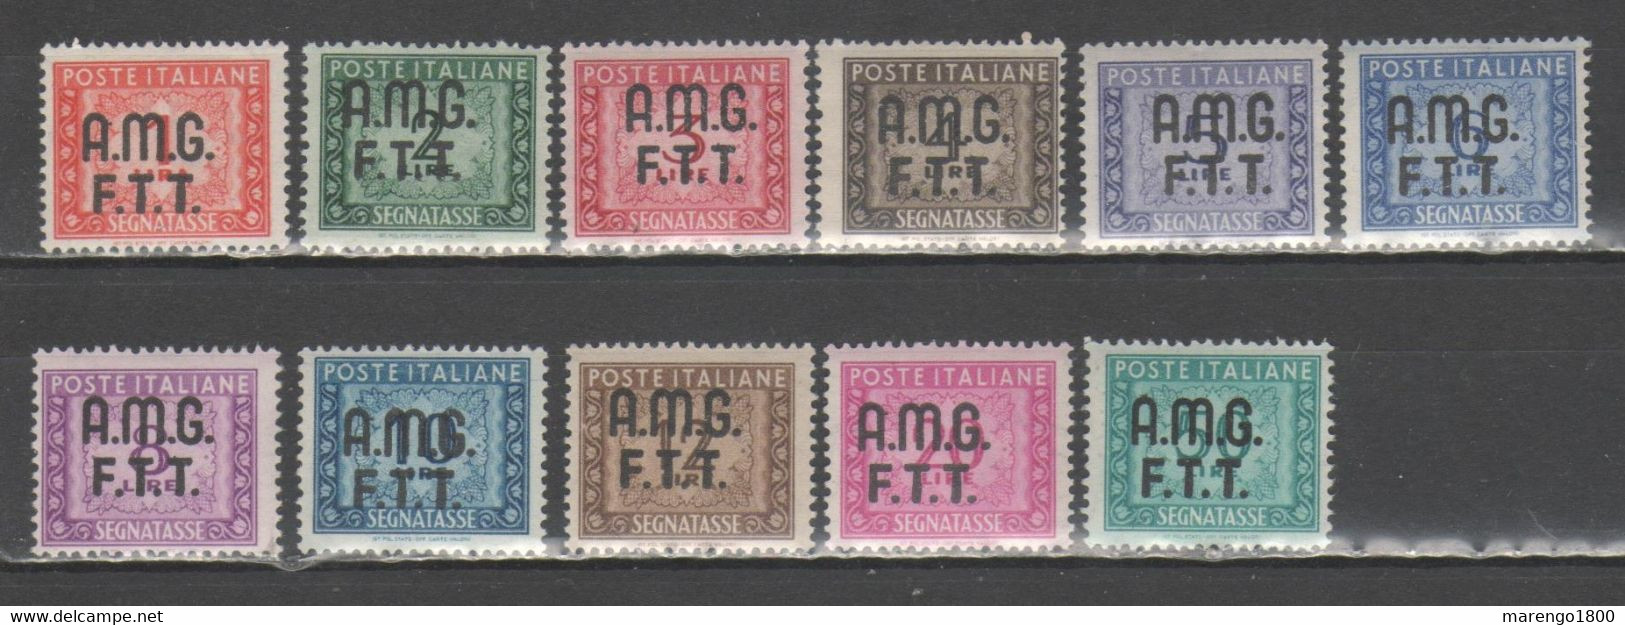 Amg-Ftt 1947-49 - Segnatasse **           (g8182) - Portomarken